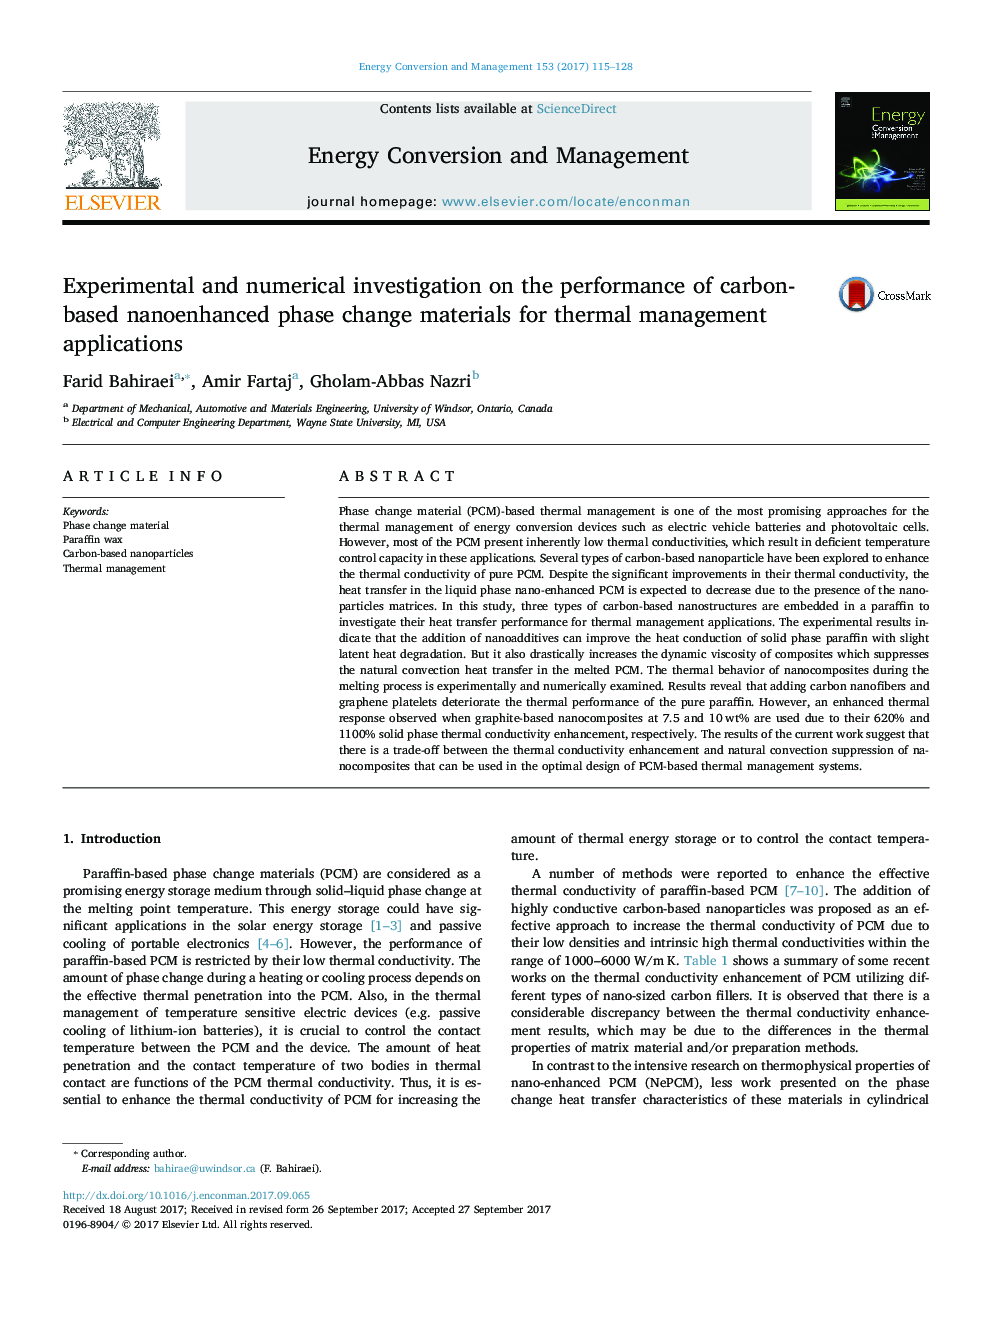 بررسی تجربی و عددی بر روی عملکرد مواد تغییر فاز نانوکامپوزیتی مبتنی بر کربن برای کاربردهای مدیریت حرارتی 